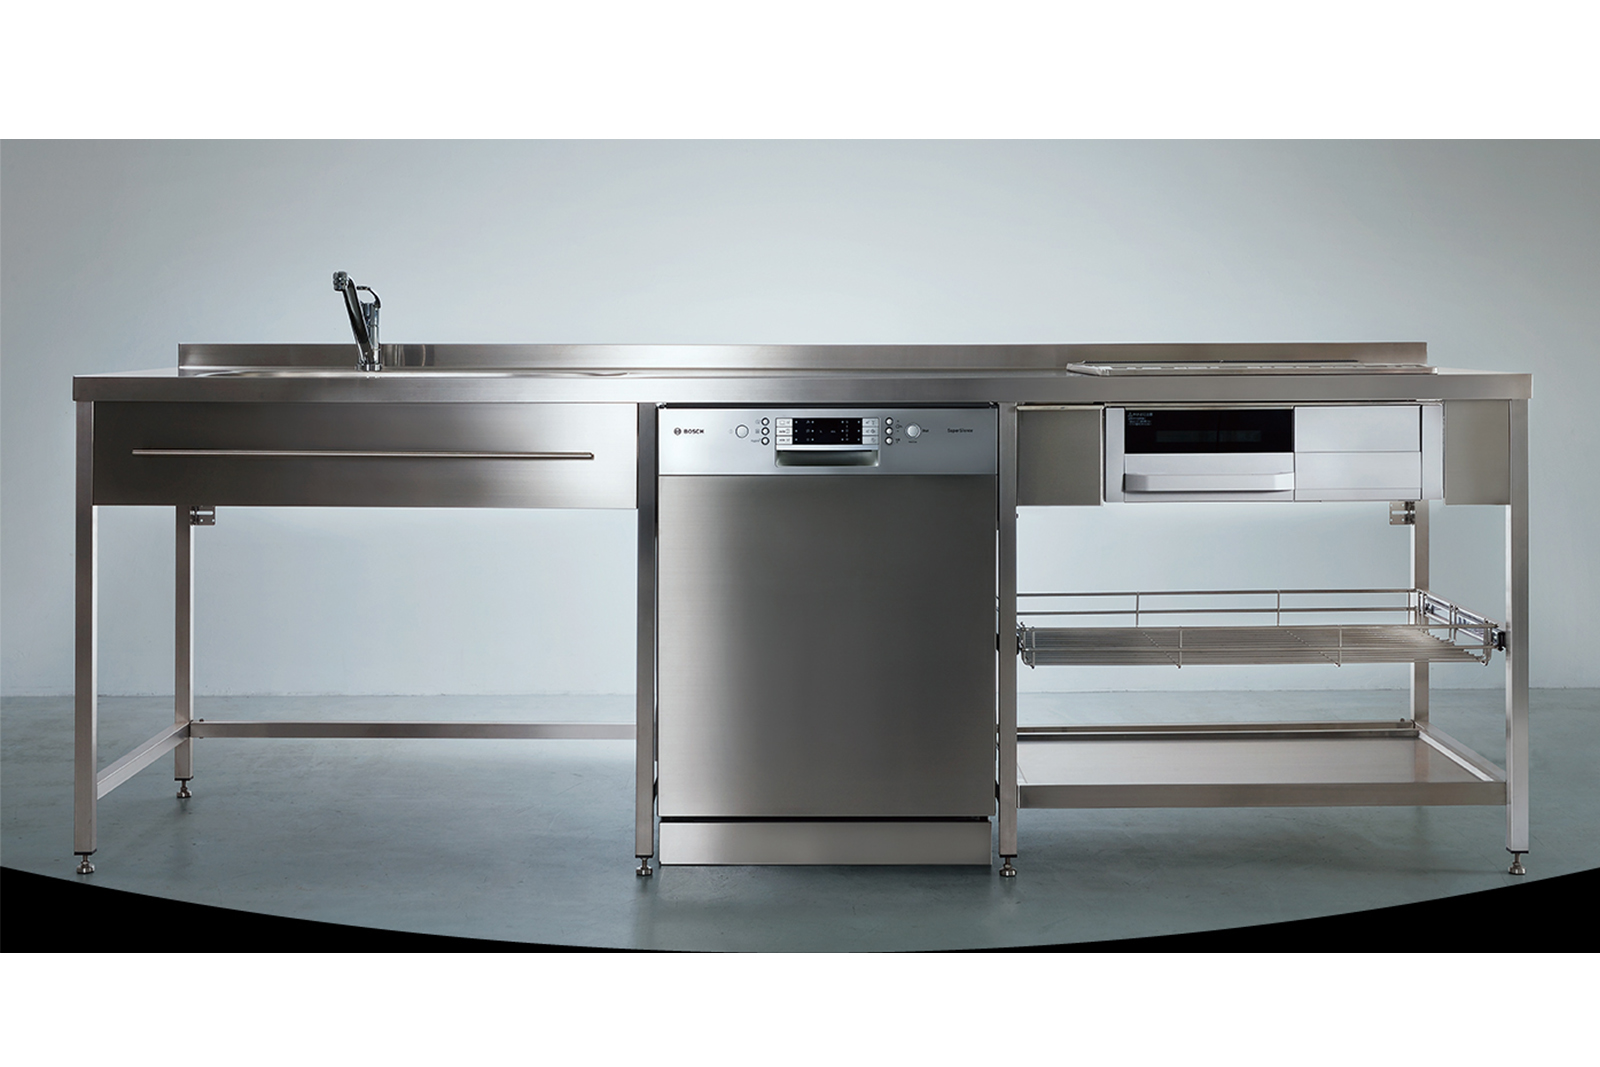 ビルトイン食洗機 フロントオープン W600 フルドアタイプ ゼオライトドライ（本体のみ） KB-PT004-04-G234 ステンレスフレームキッチンとの事例。写真はW600前面操作タイプ(旧仕様)